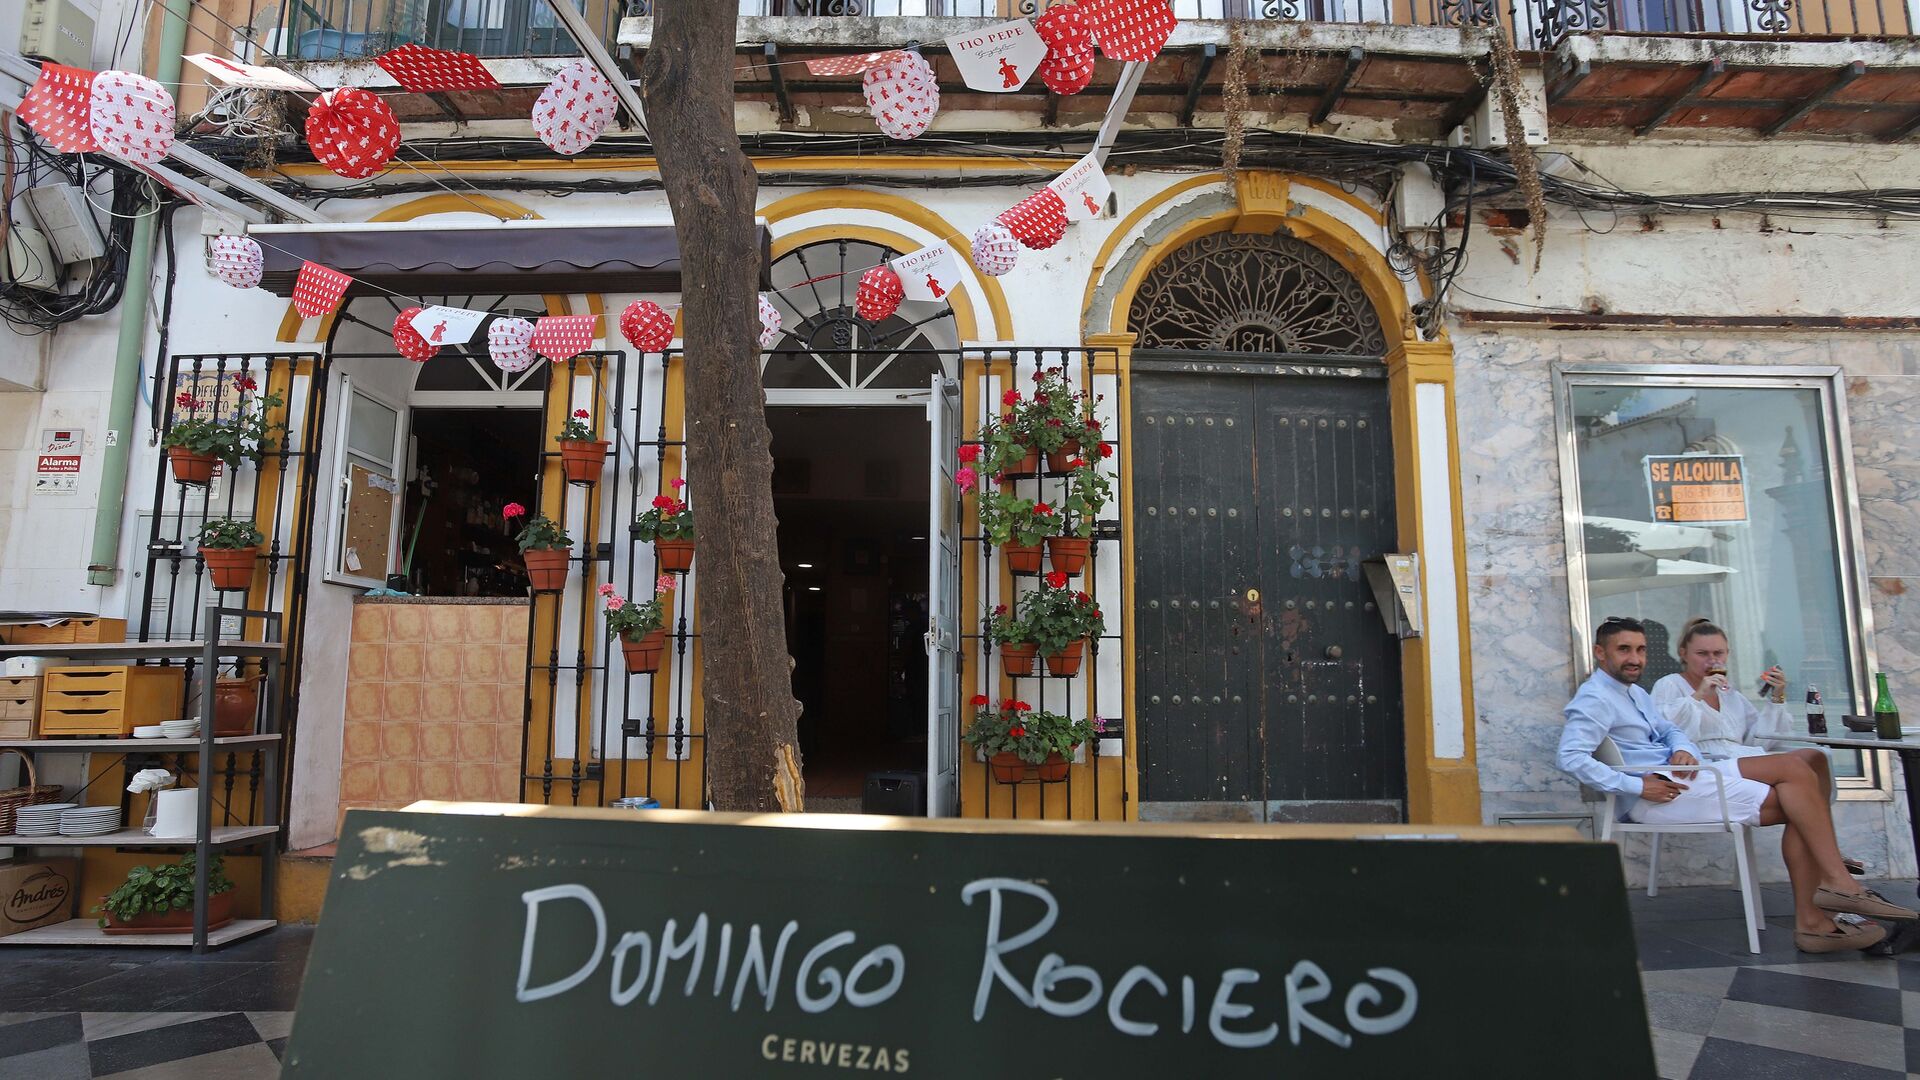 Fotos del Domingo Rociero en Algeciras